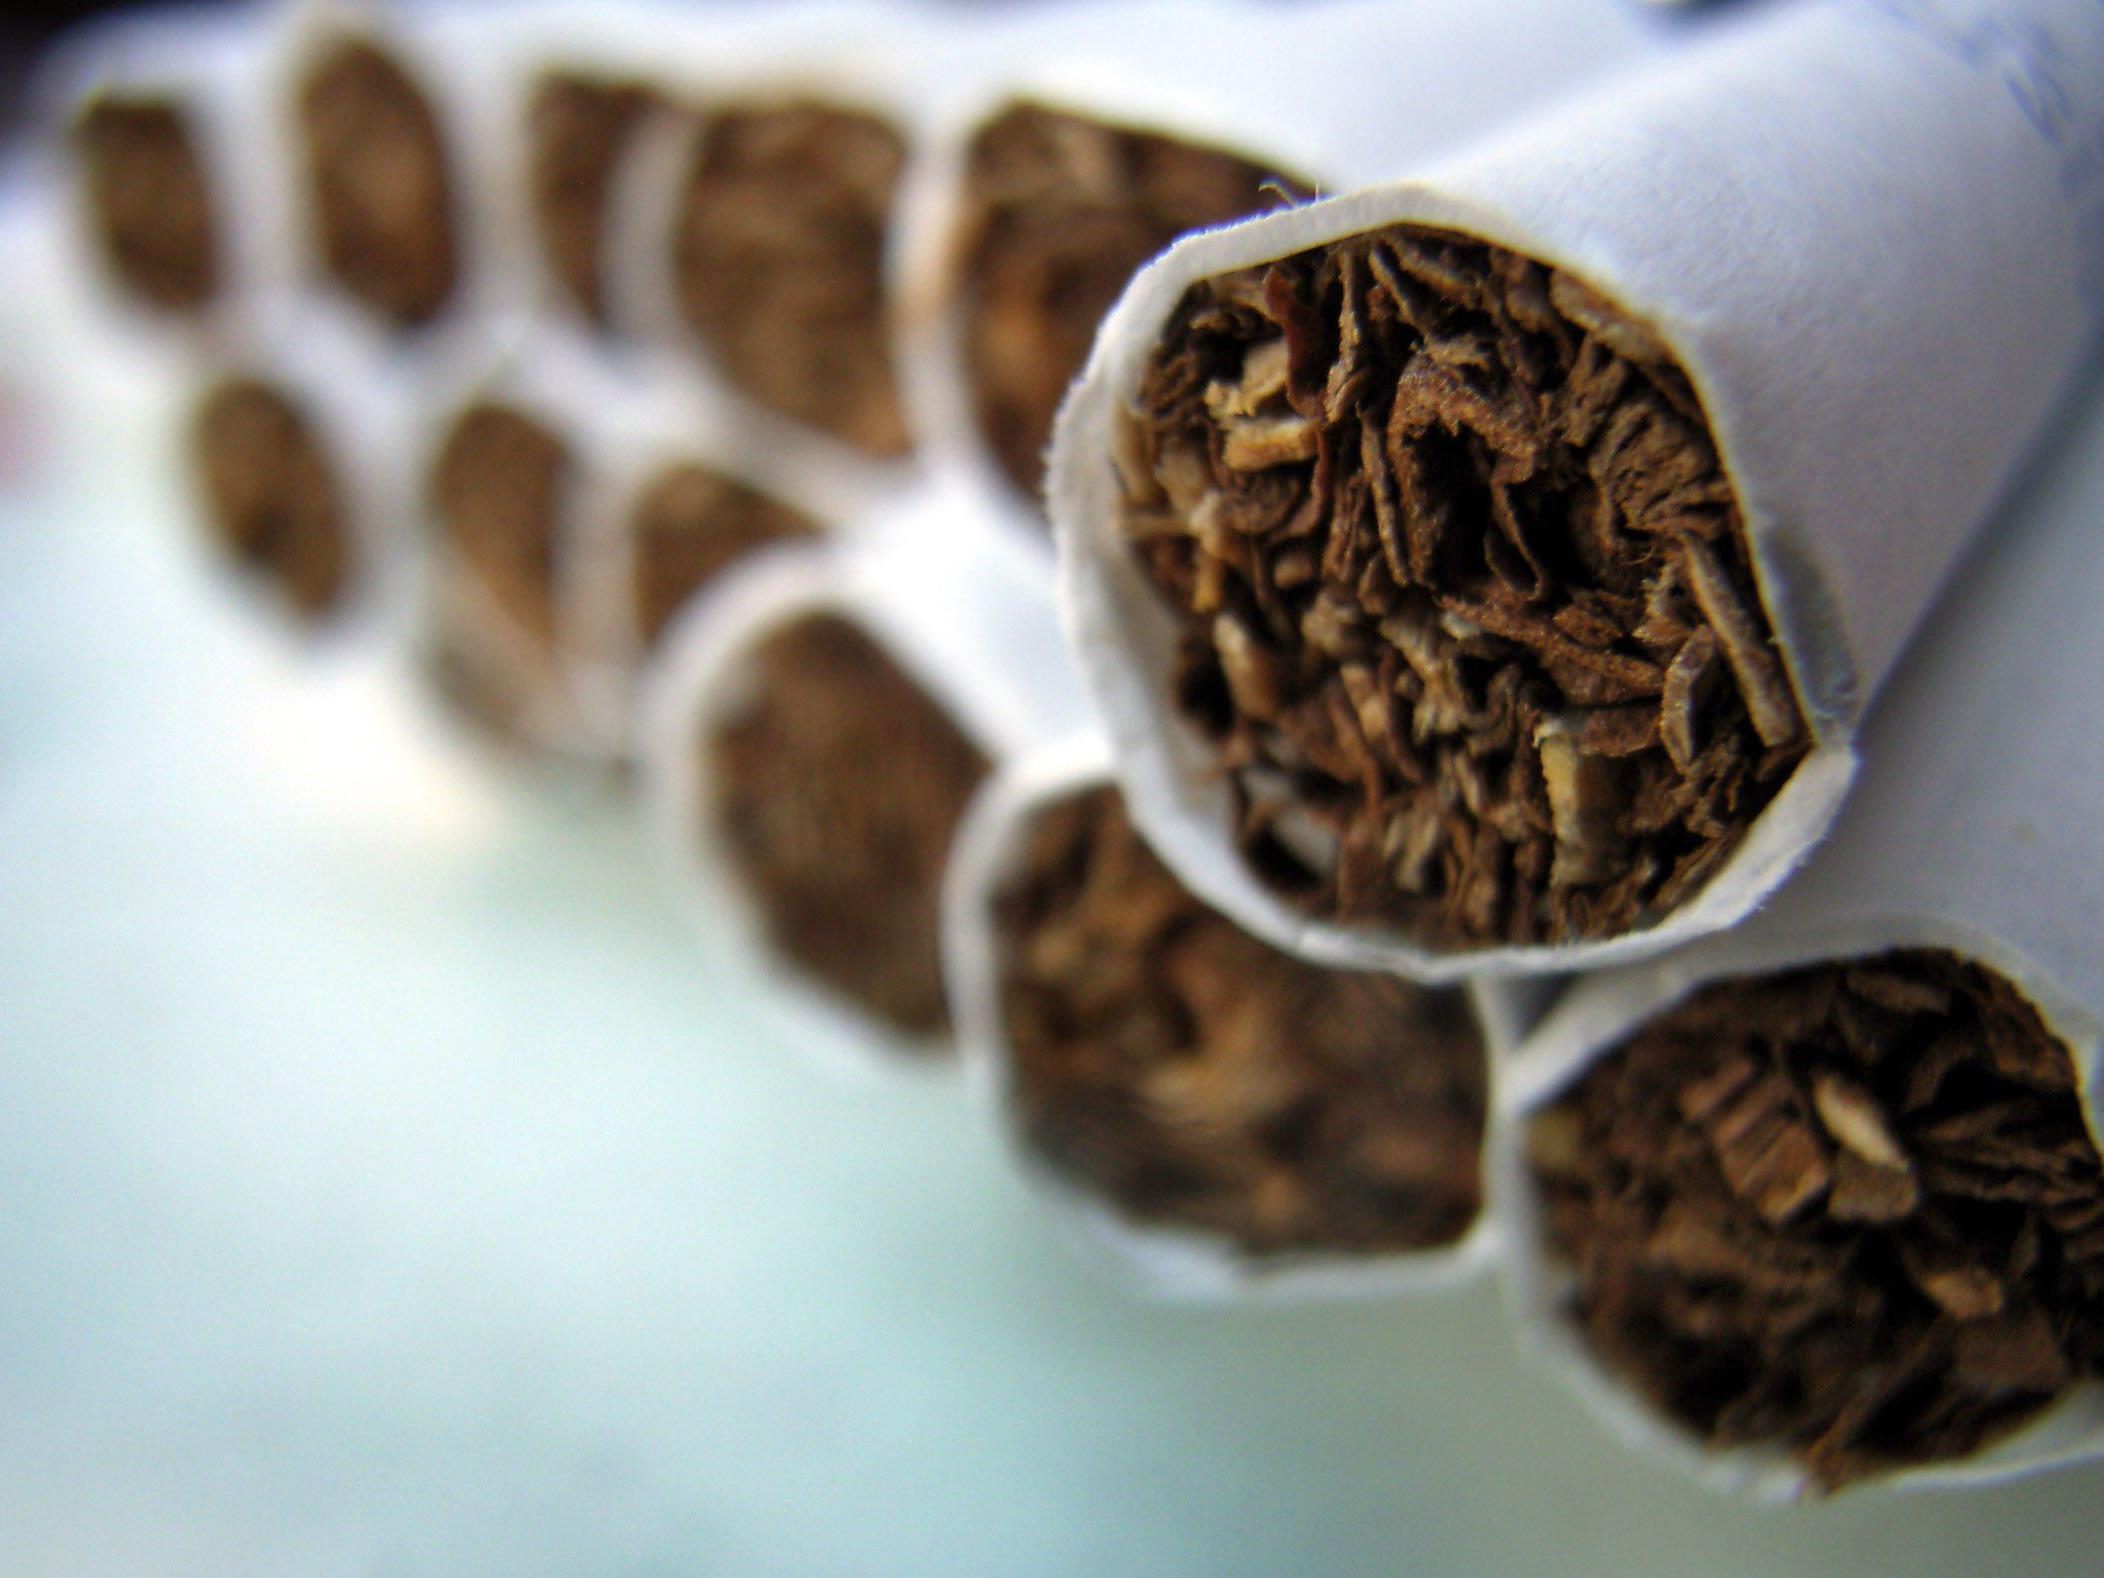 Tabakprodukte: Neuregelung soll vor allem Jugendliche vom Rauchen abhalten